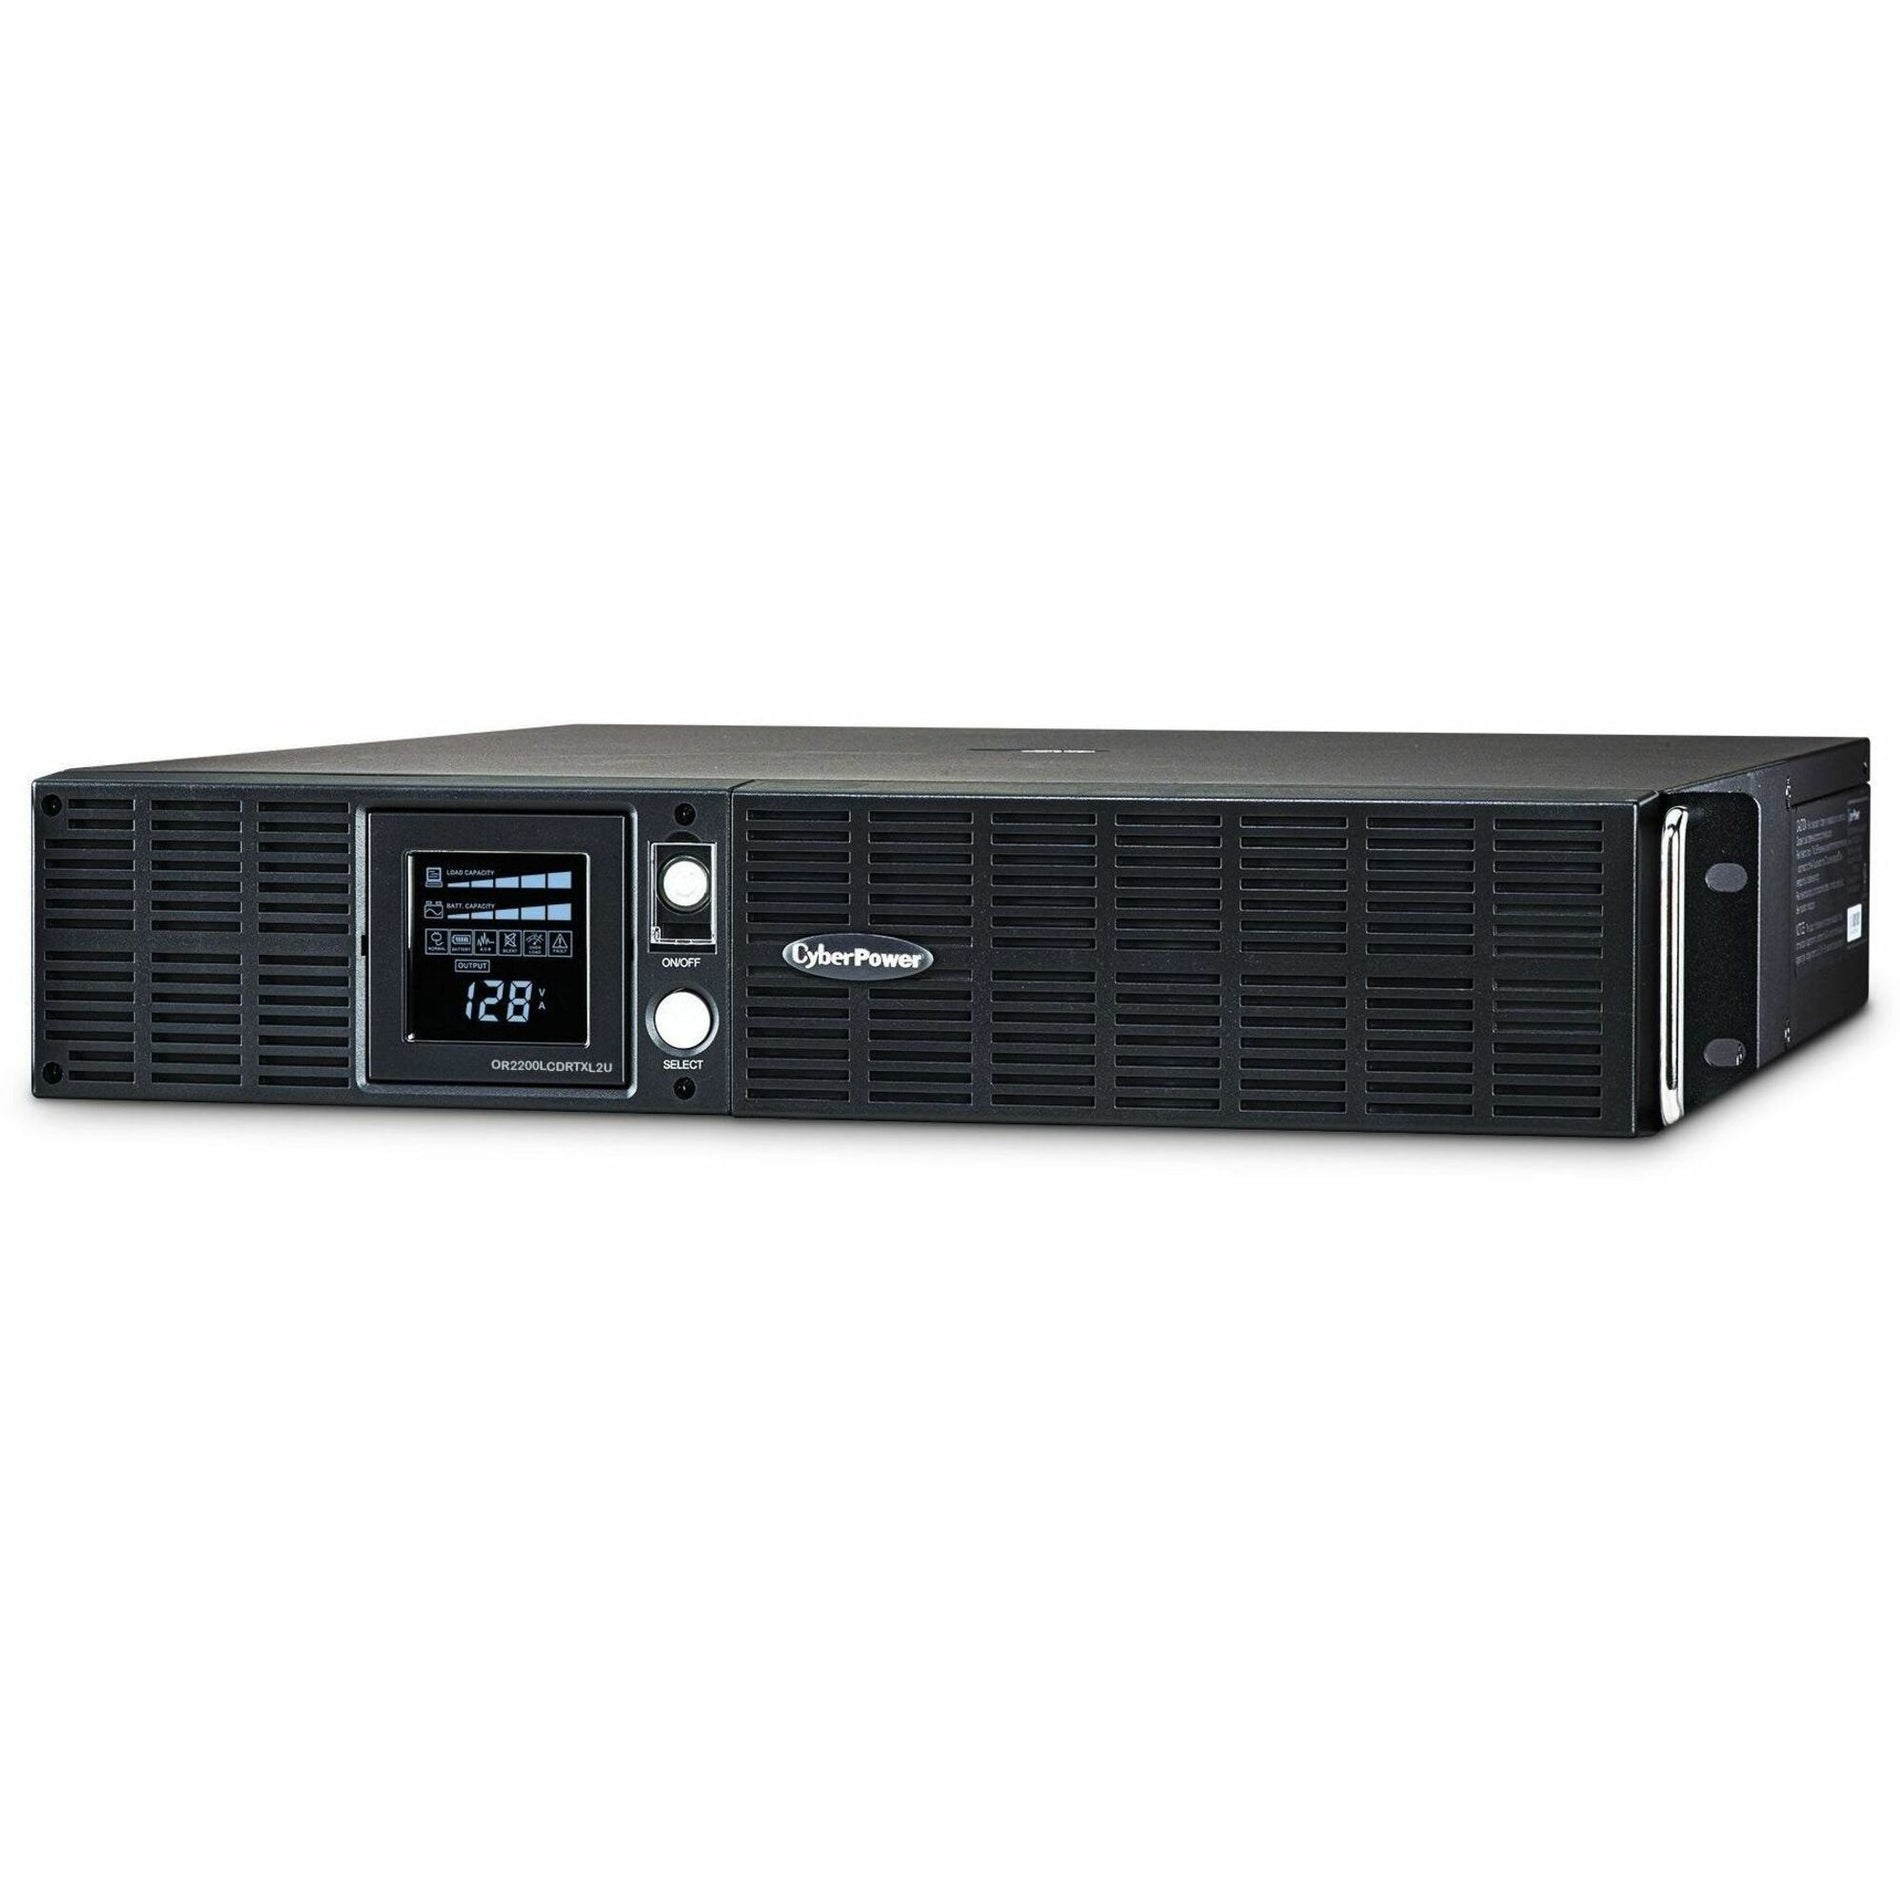 サイバーパワー OR2200LCDRTXL2U スマートアプリ LCD UPS システム、2190 VA タワー/ラックマウント可能 UPS CyberPower サイバーパワー